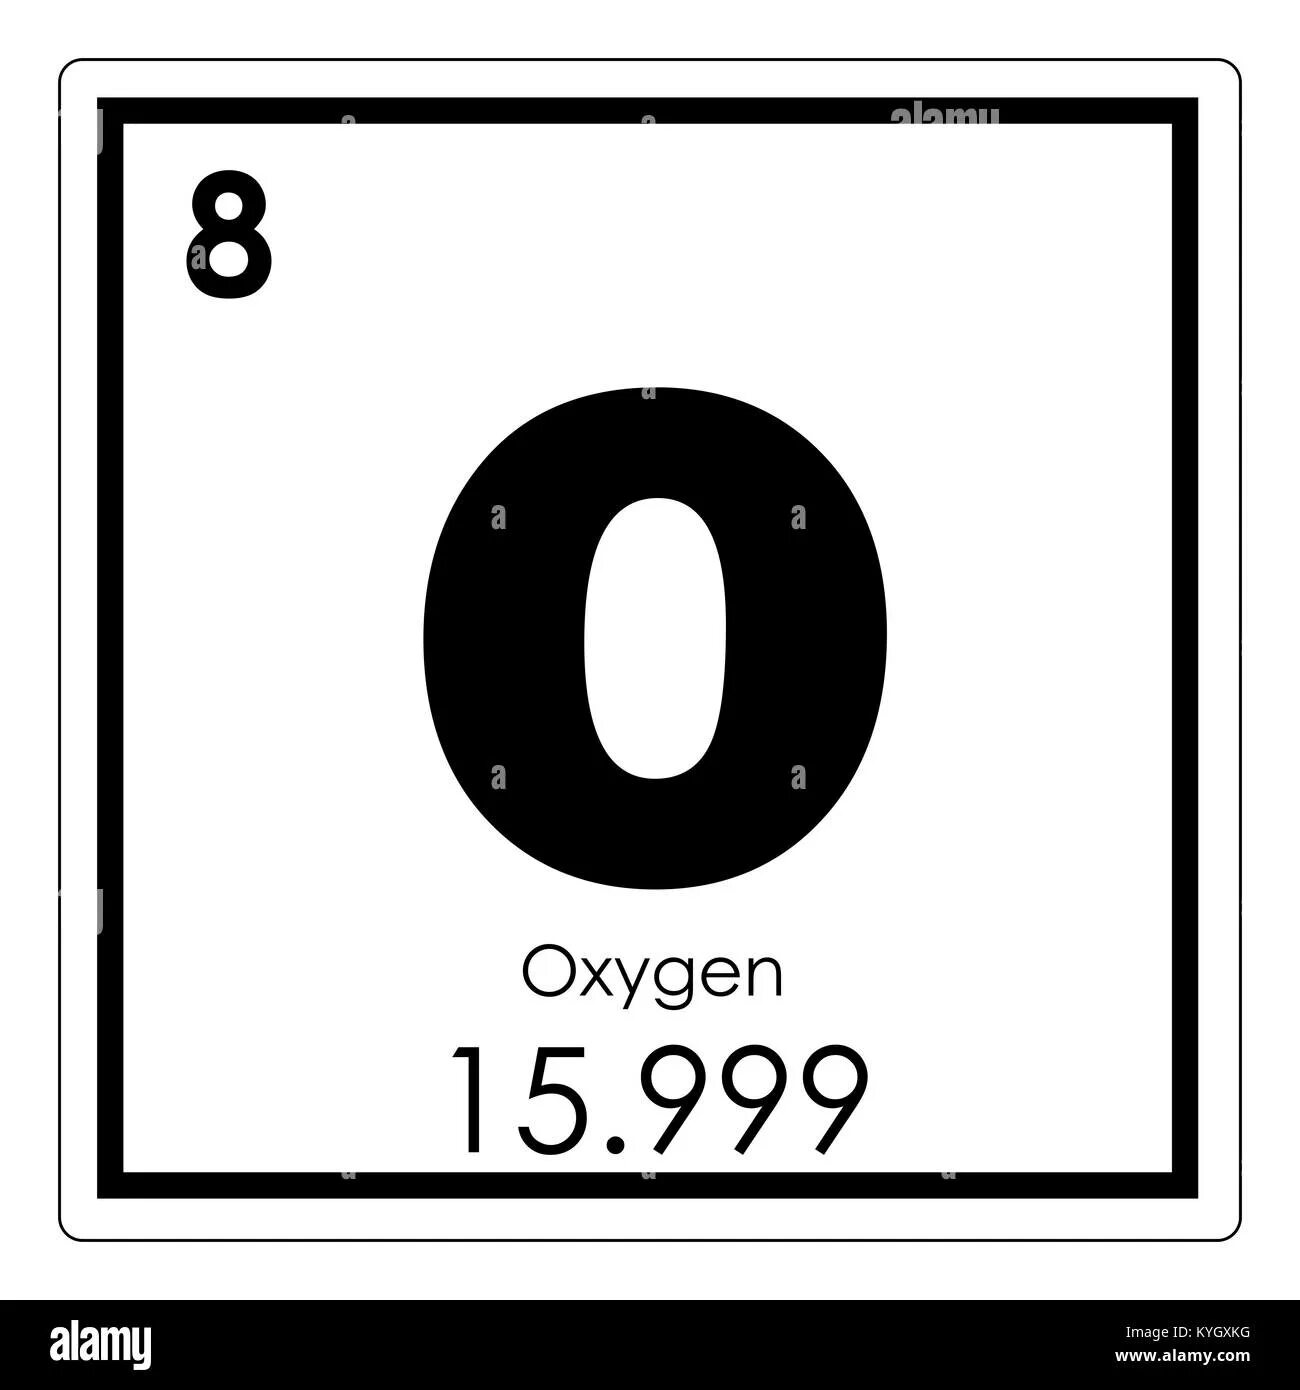 Символ элемента кислород. Химический символ кислорода. Символы химических элементов. O химический элемент. Oxygen химический элемент.